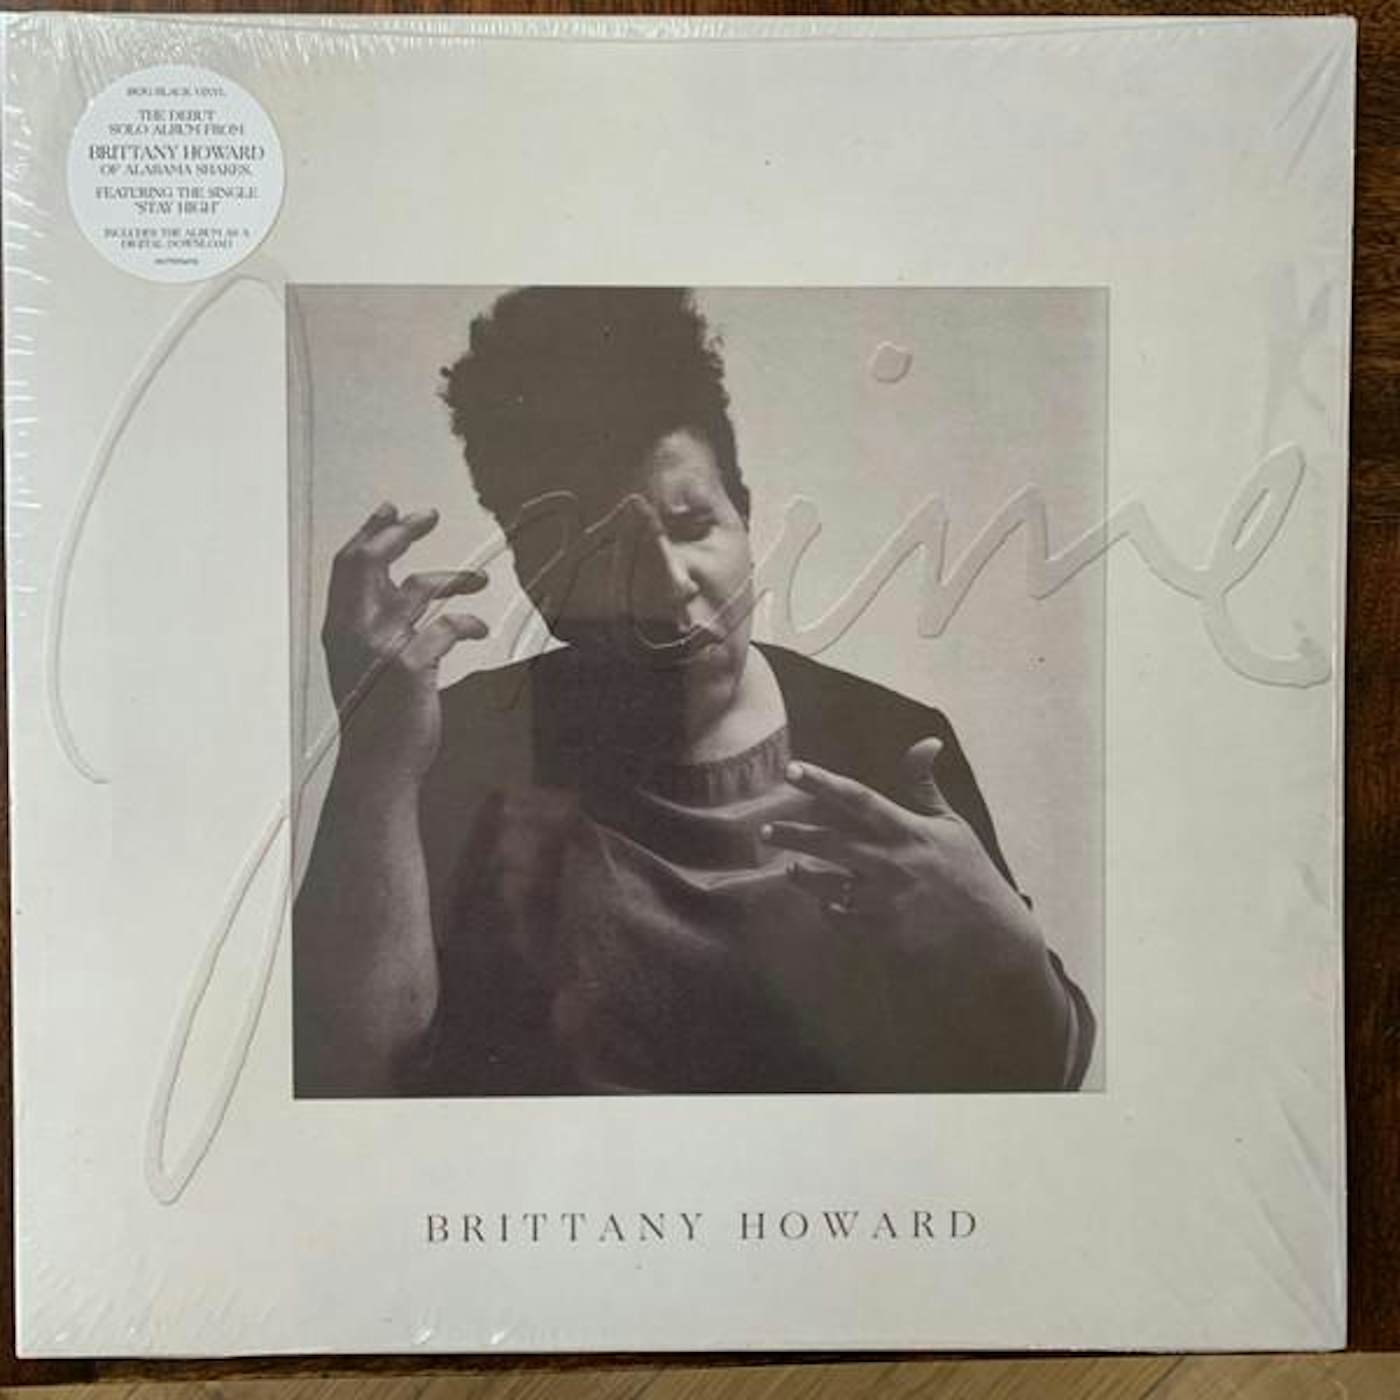 Brittany Howard JAIME Vinyl Record